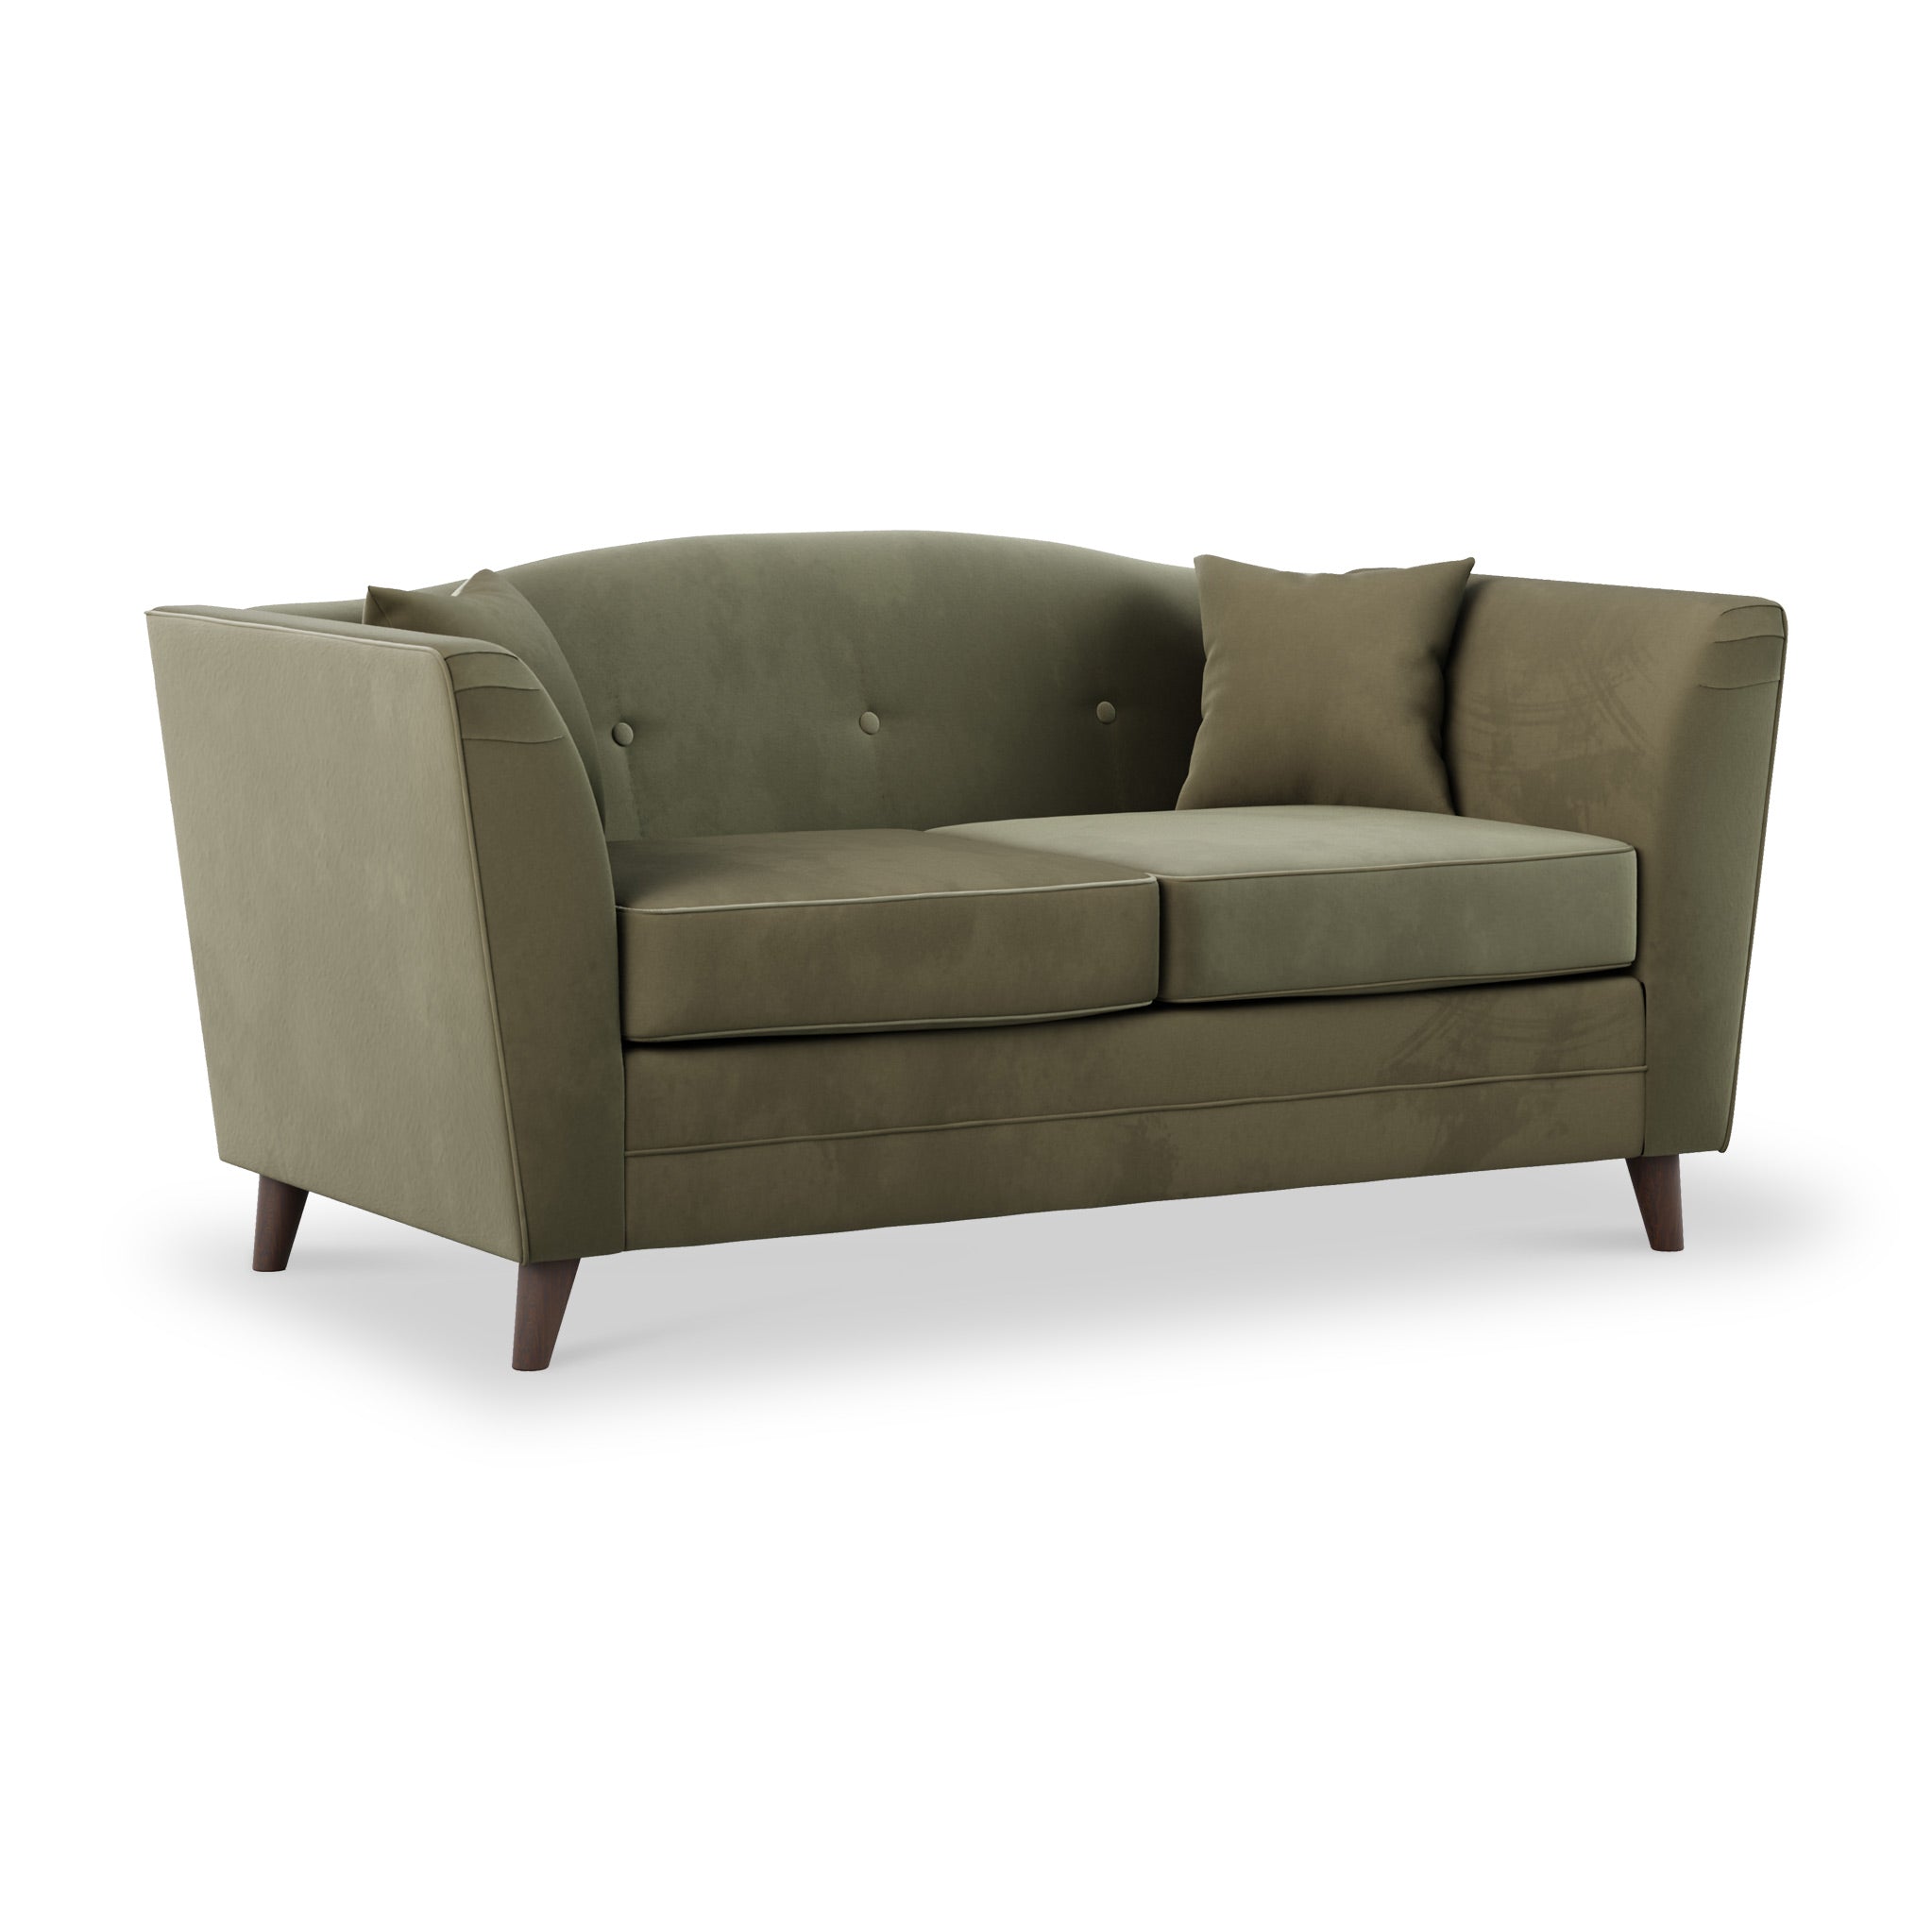 Pippa Velvet 2 Seater Sofa Modern Upholstered Fabric Couch Roseland